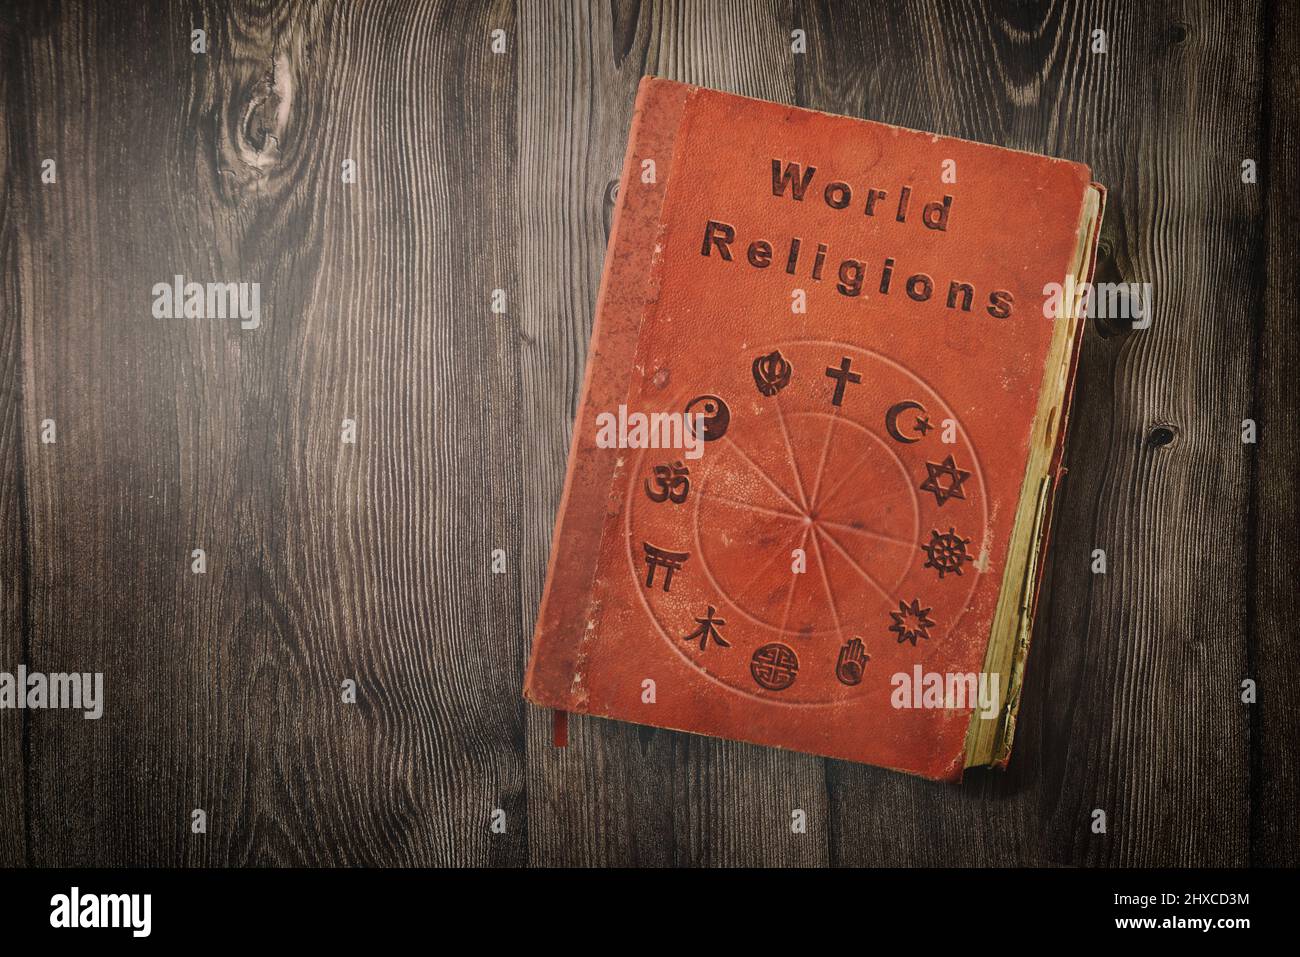 Livre des religions du monde avec des symboles religieux imprimés sur une table en bois. Vue de dessus. Banque D'Images